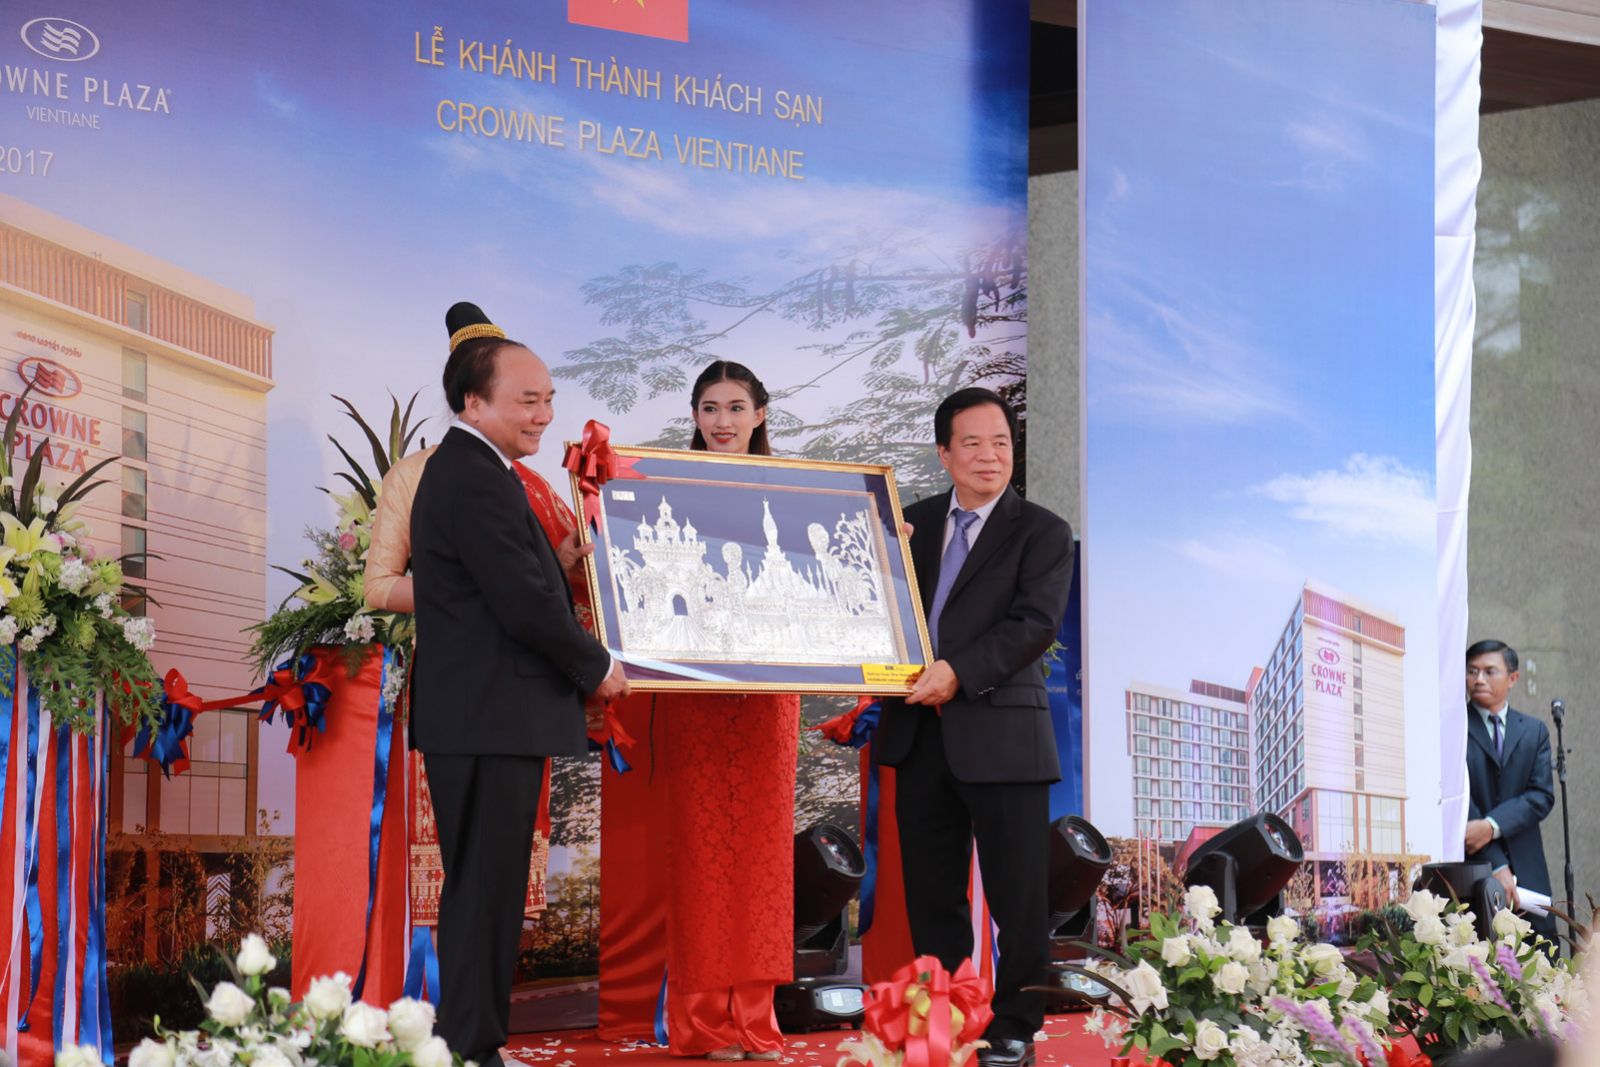 Nguyên Thủ tướng Nguyễn Xuân Phúc và Chủ tịch BIM Group, ông Đoàn Quốc Việt, trong lễ khai trương khách sạn 5 sao Crowne Plaza Vientiane